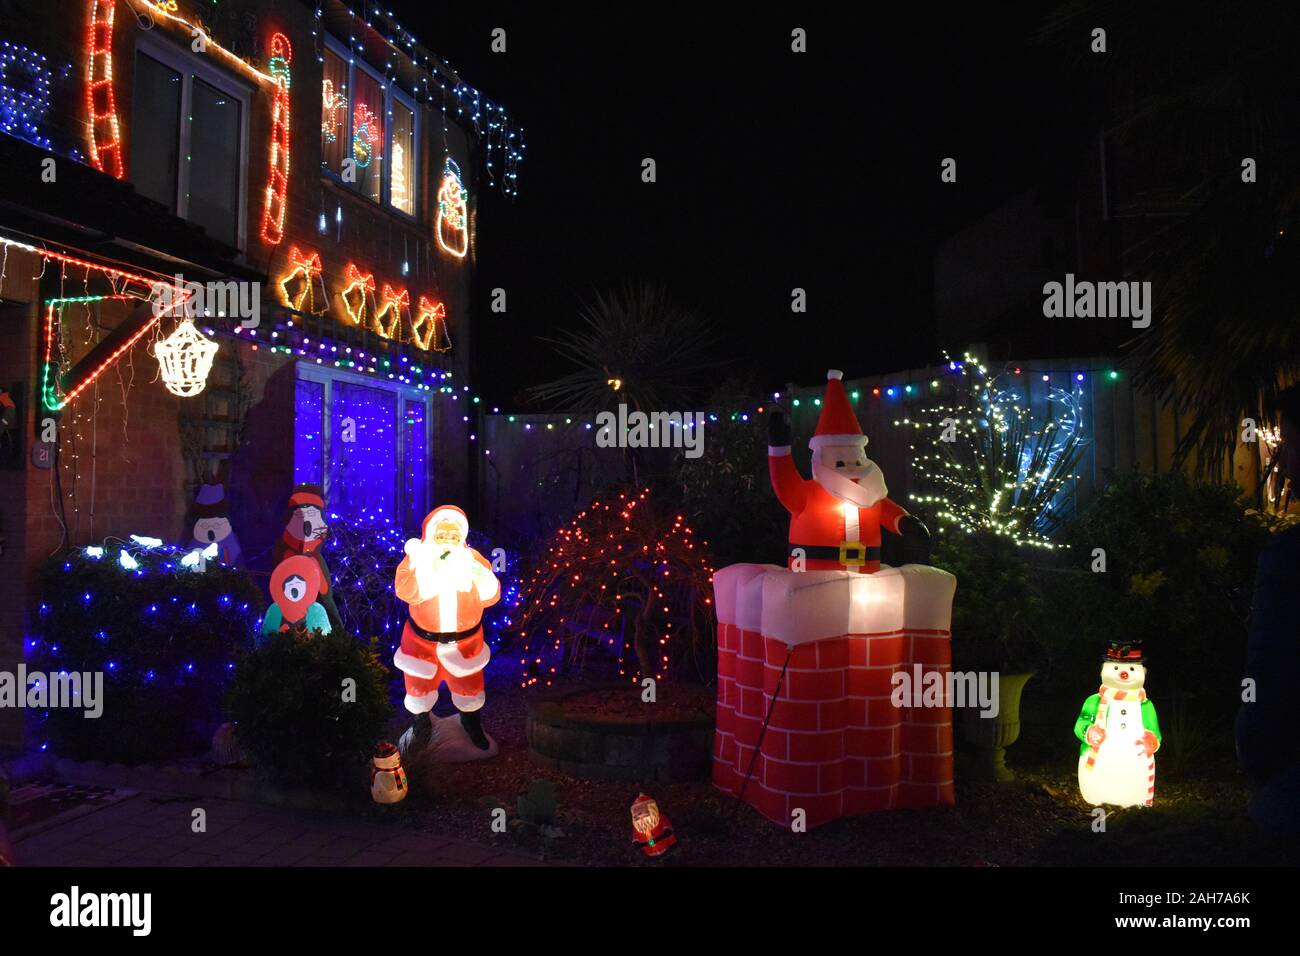 Case Decorate Per Natale.Case Di Natale Immagini E Fotos Stock Alamy